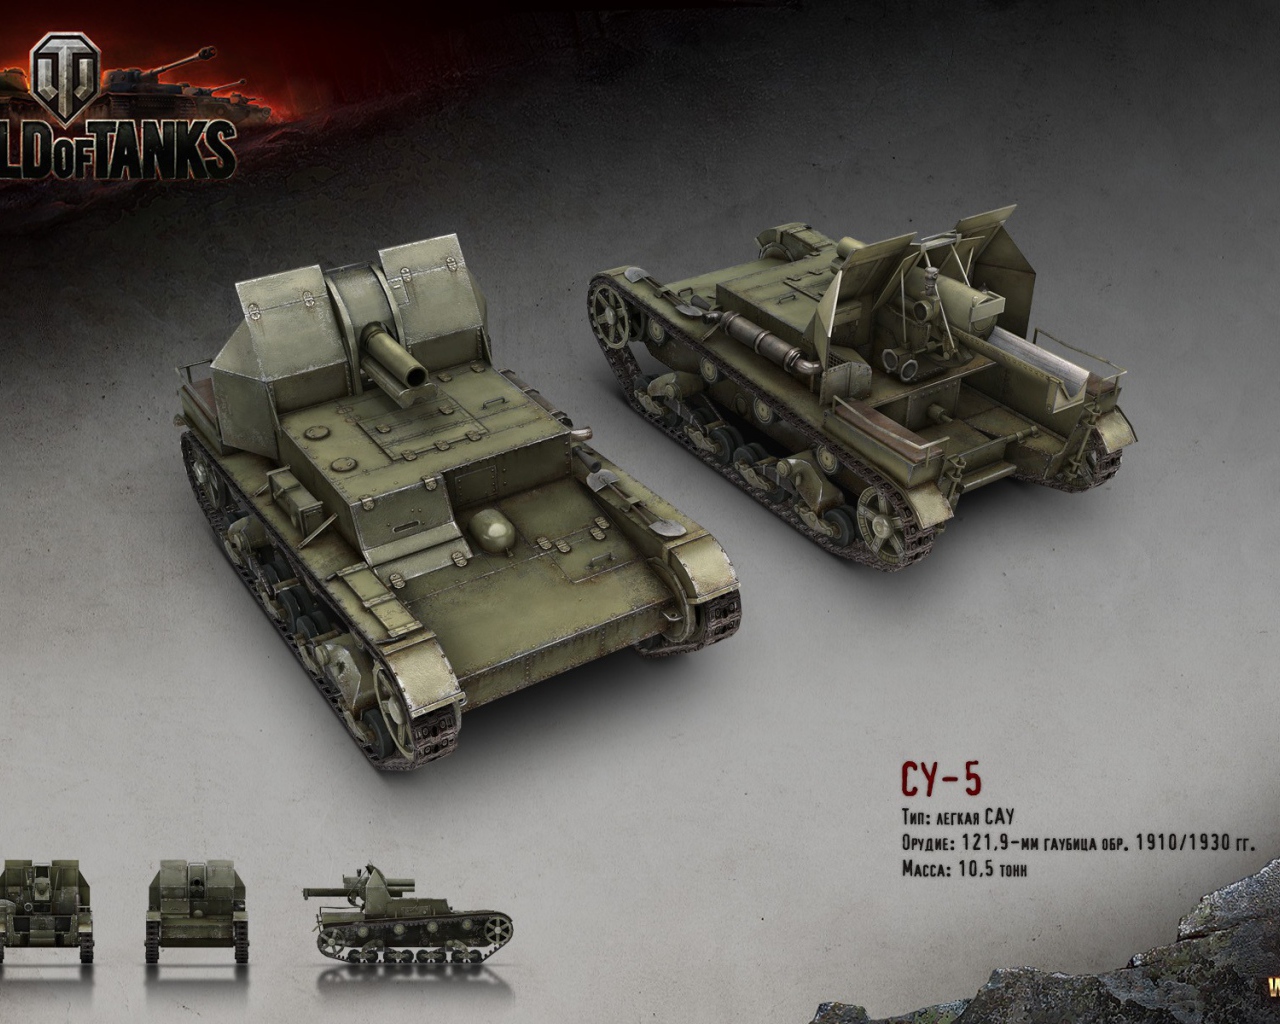 Легкая САУ СУ-5, игра World of Tanks